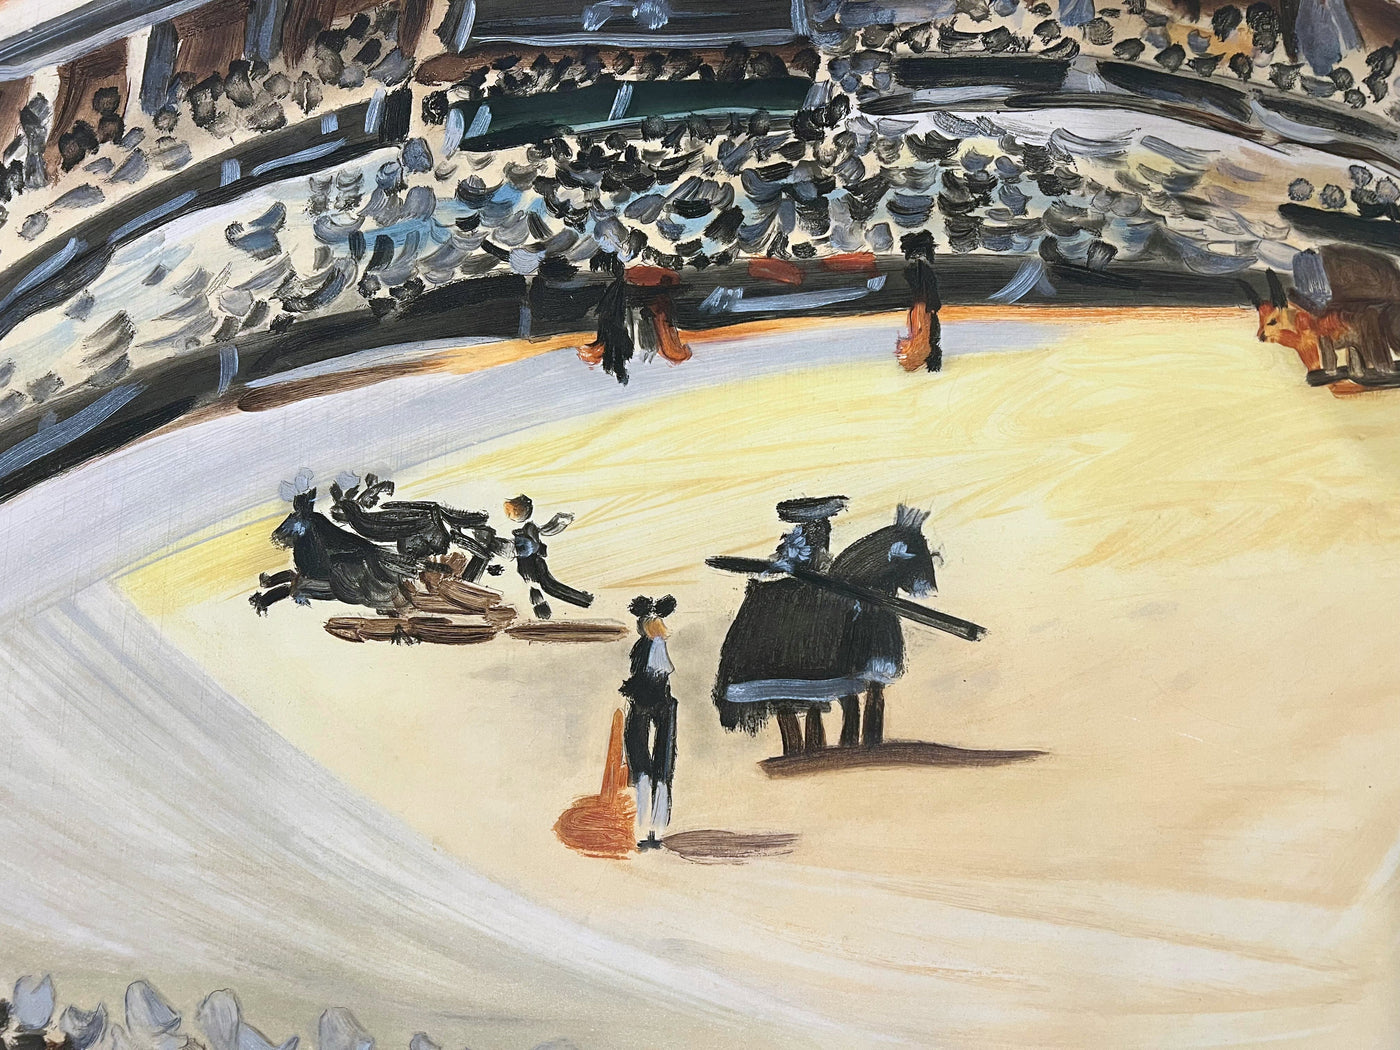 Pablo Picasso (after) La Corrida (The Bullfight) 1956